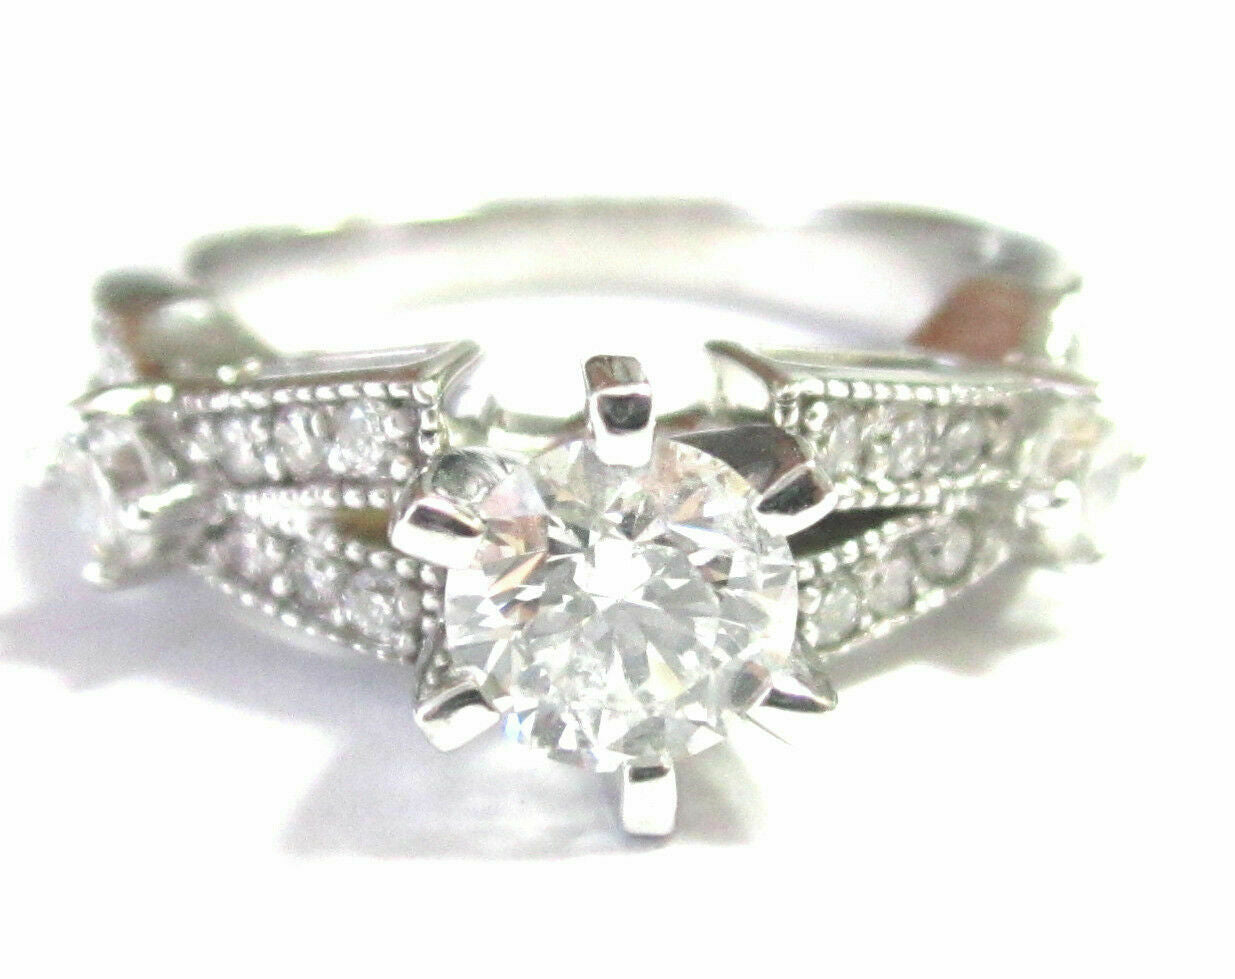 Round Brilliant Cut Diamond Designer-Inspired Engagement Ring